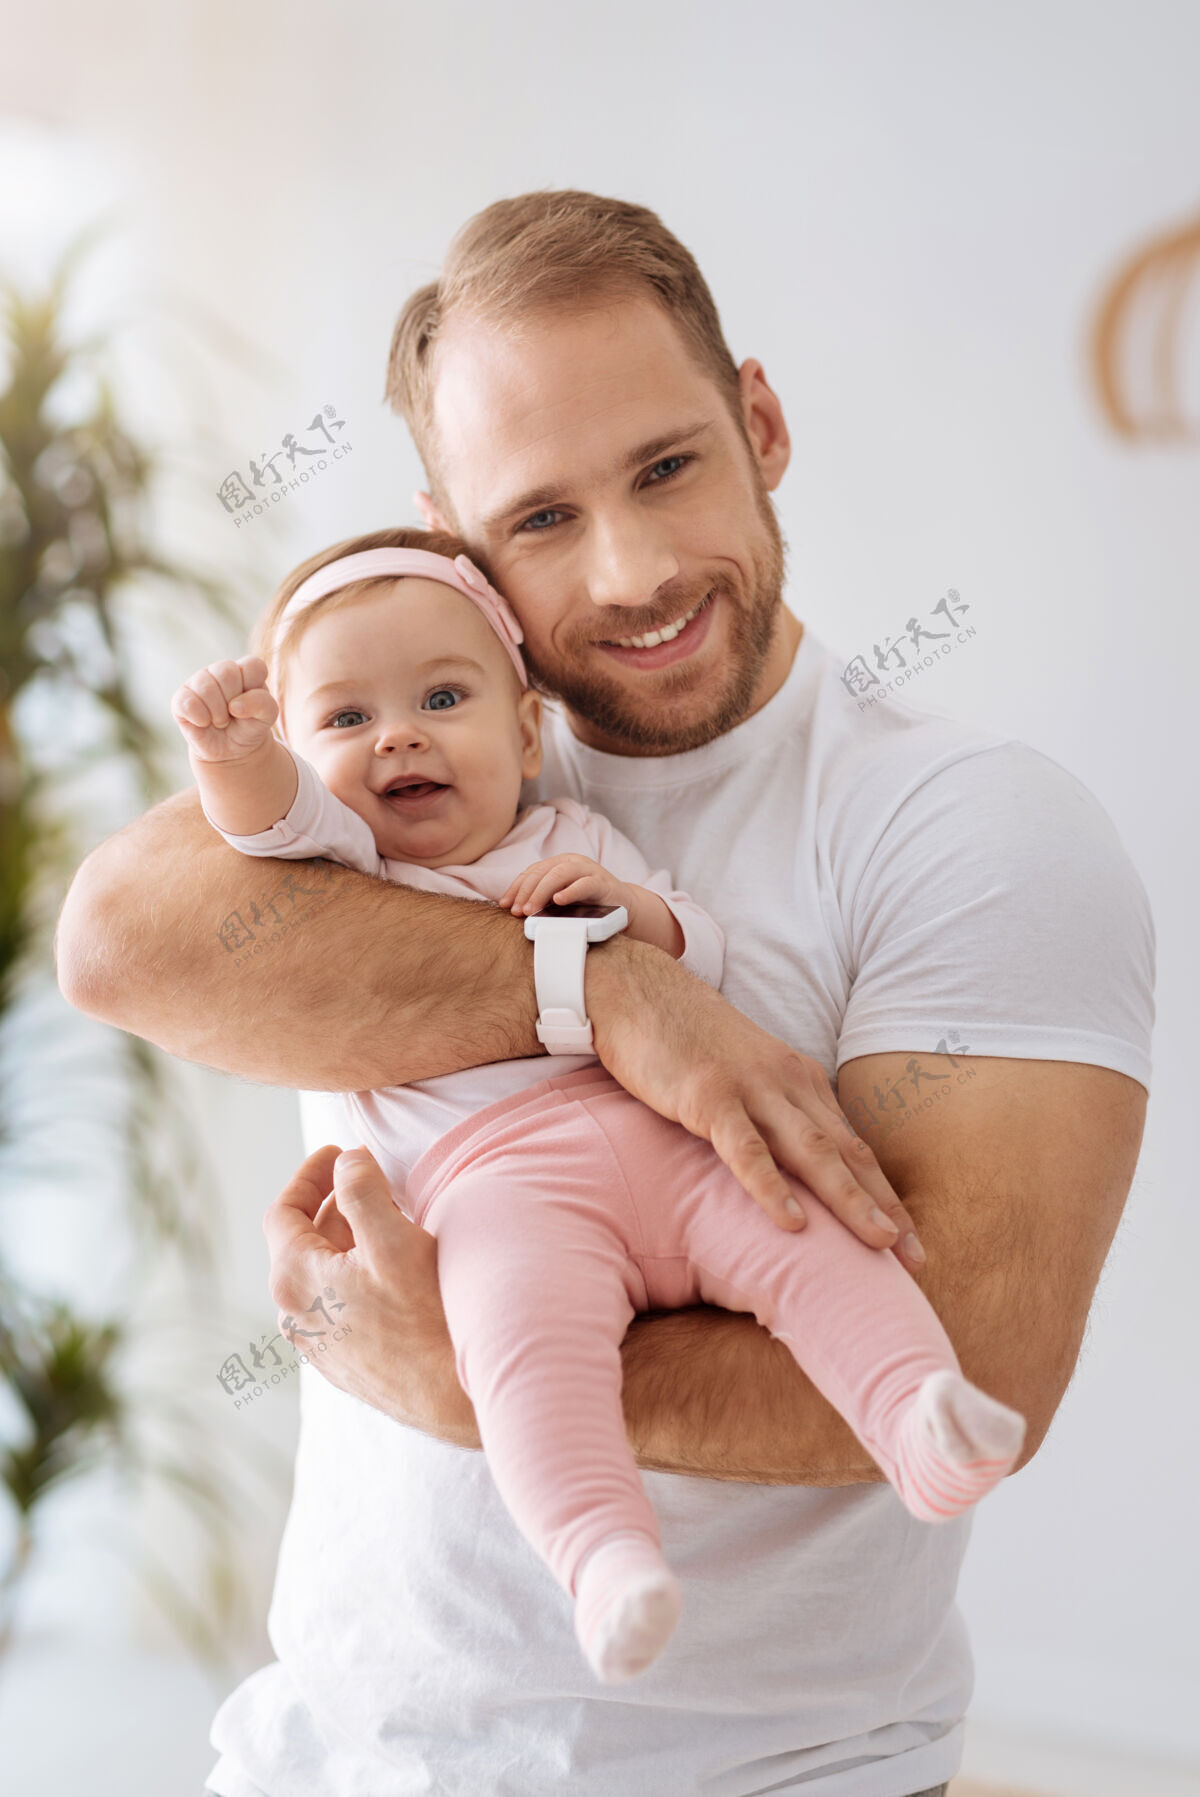 发展探索一切周围有趣可爱快乐的女婴躺在爸爸的手里 一边看着别处 一边表达着兴趣和喜悦为人父母房子世代